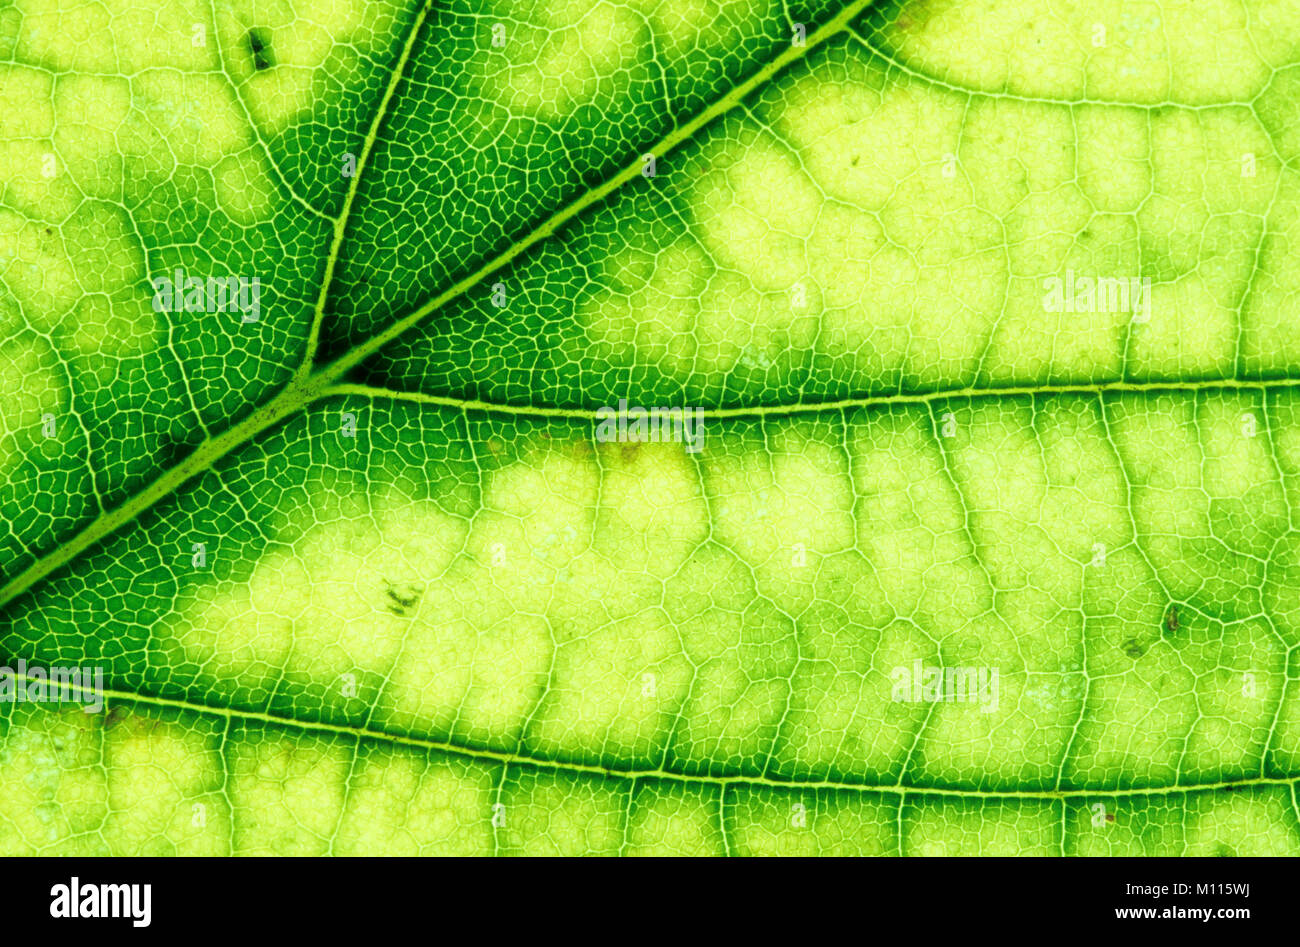 Norway Maple, leaf detail, North Rhine-Westphalia, Germany / (Acer platanoides) | Spitzahorn, Blattdetail, Nordrhein-Westfalen, Deutschland Stock Photo